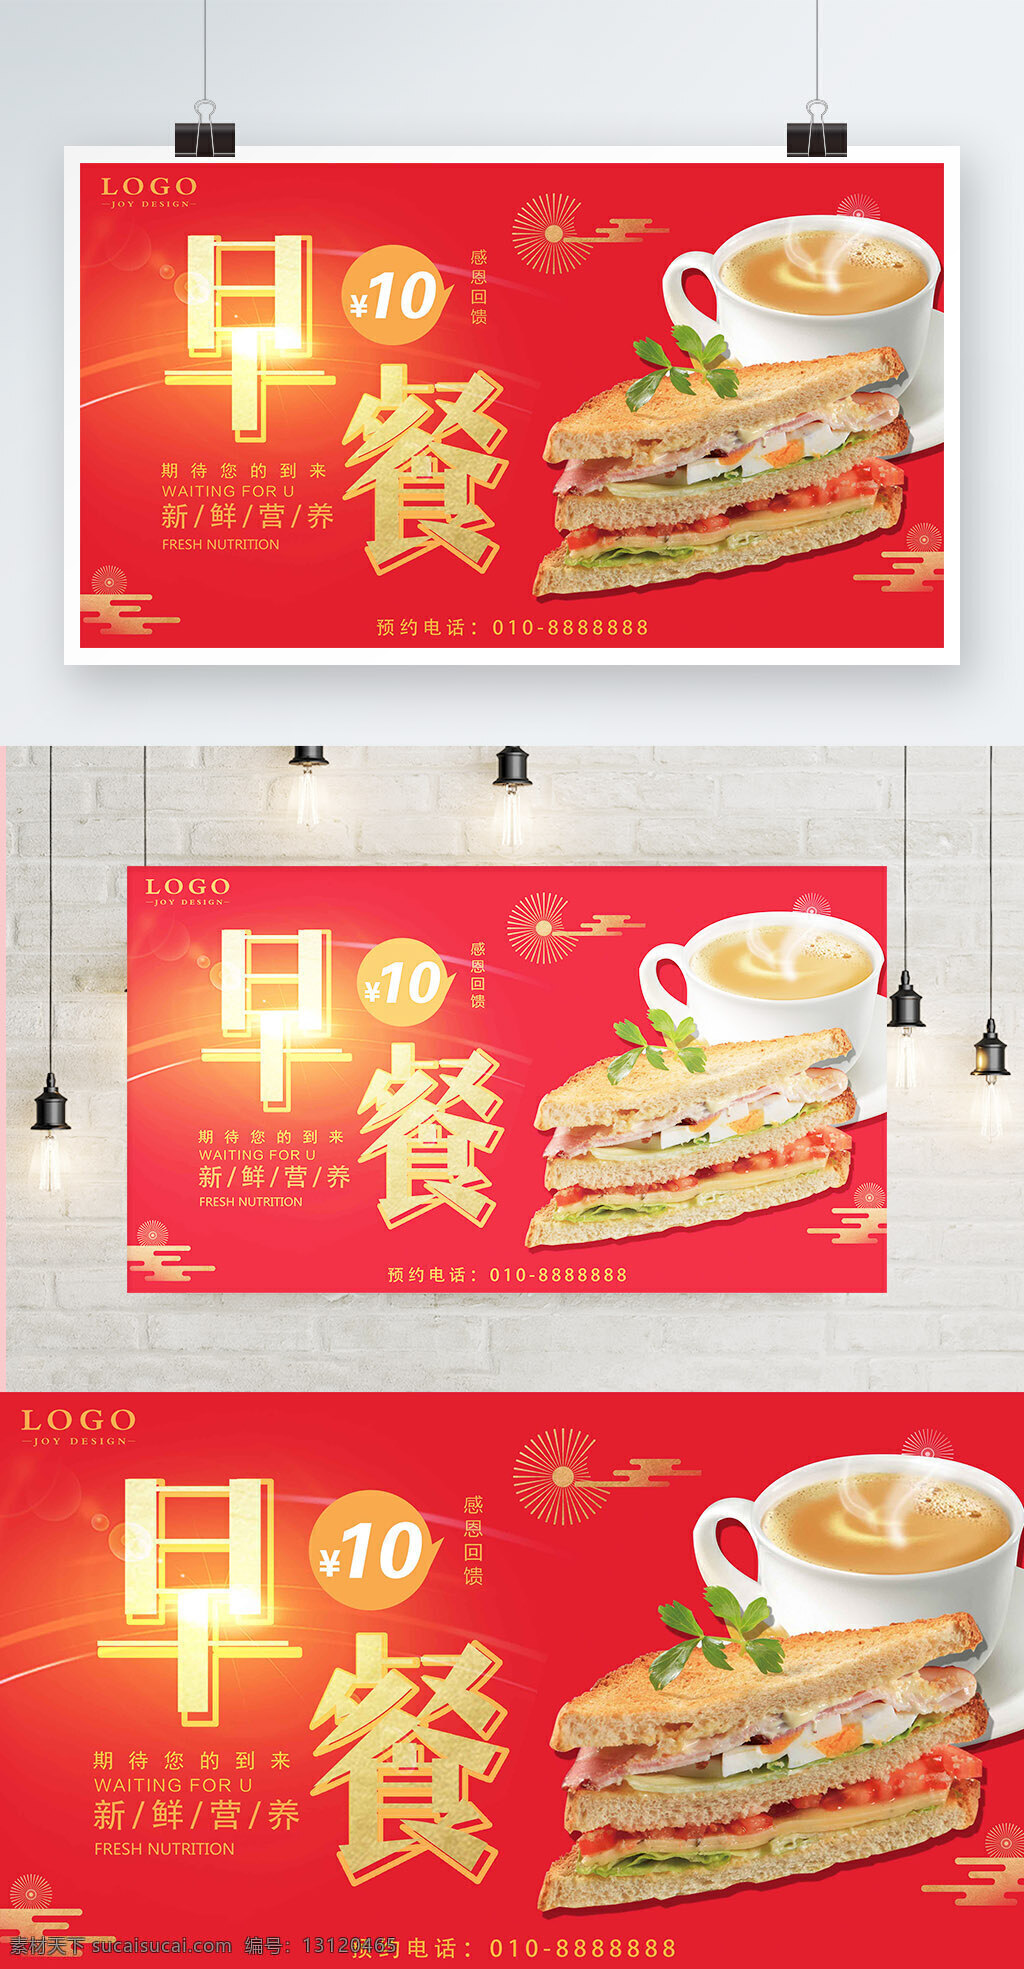 红色 背景 简约 大气 奢华 美味 早餐 宣传海报 餐厅 咖啡 美食 面包 奶茶